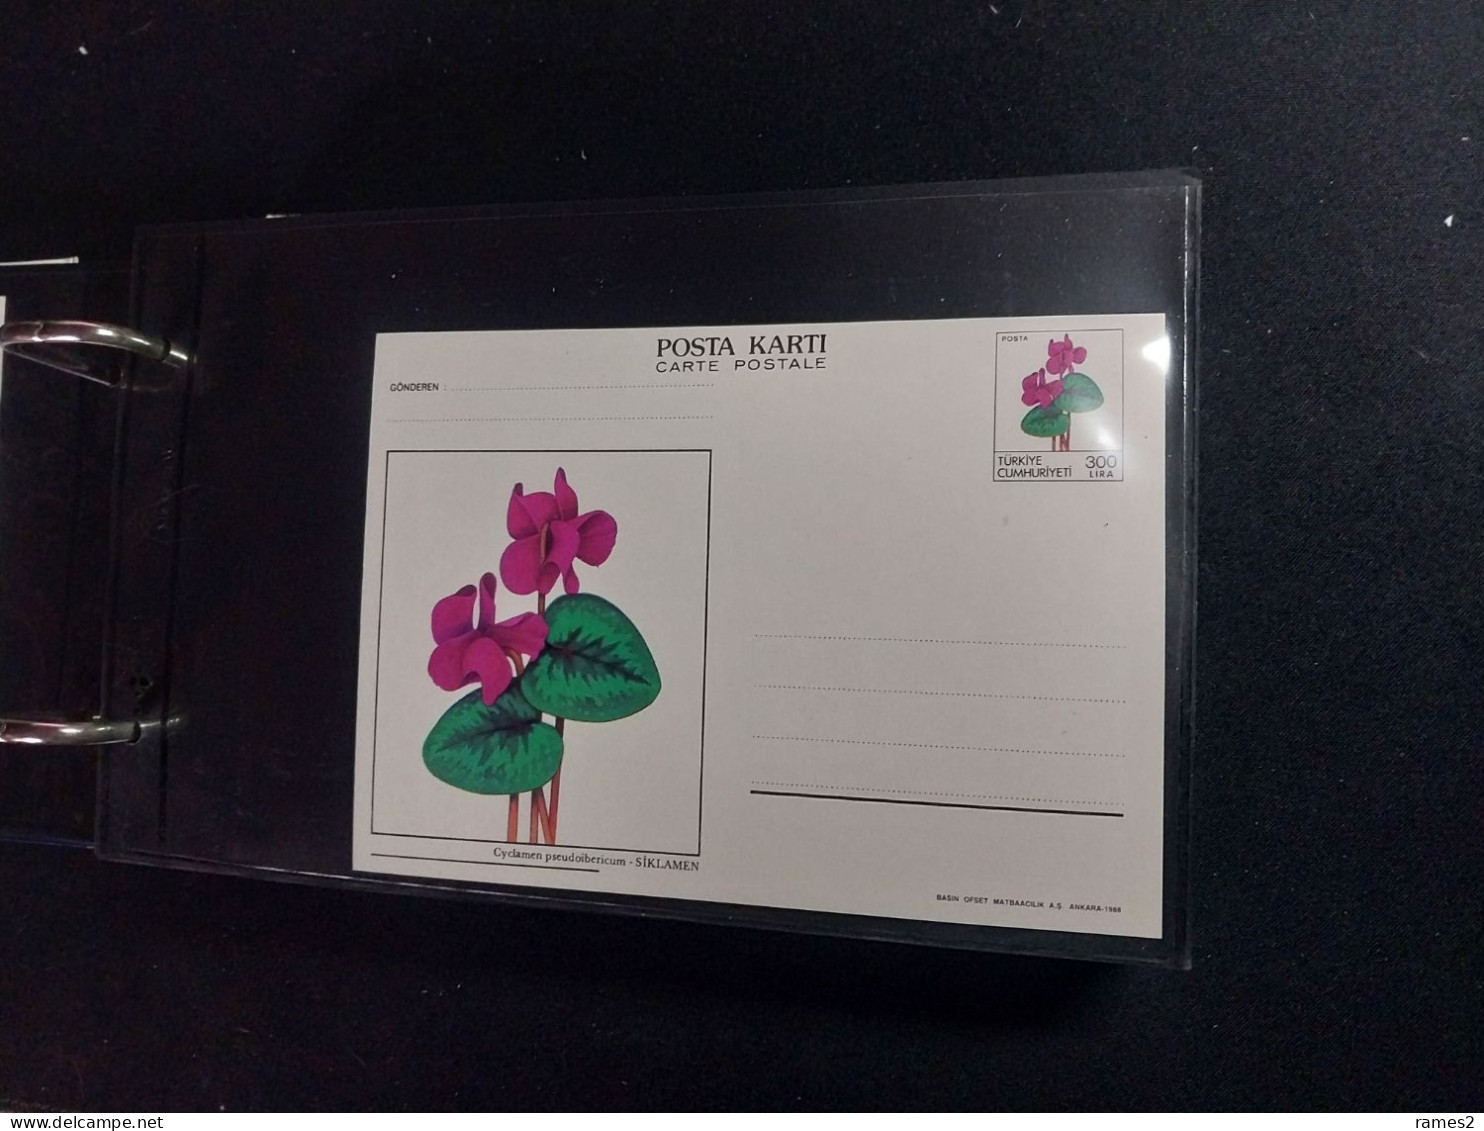 Album avec FDC et cartes postal divers neuves, et entier postaux